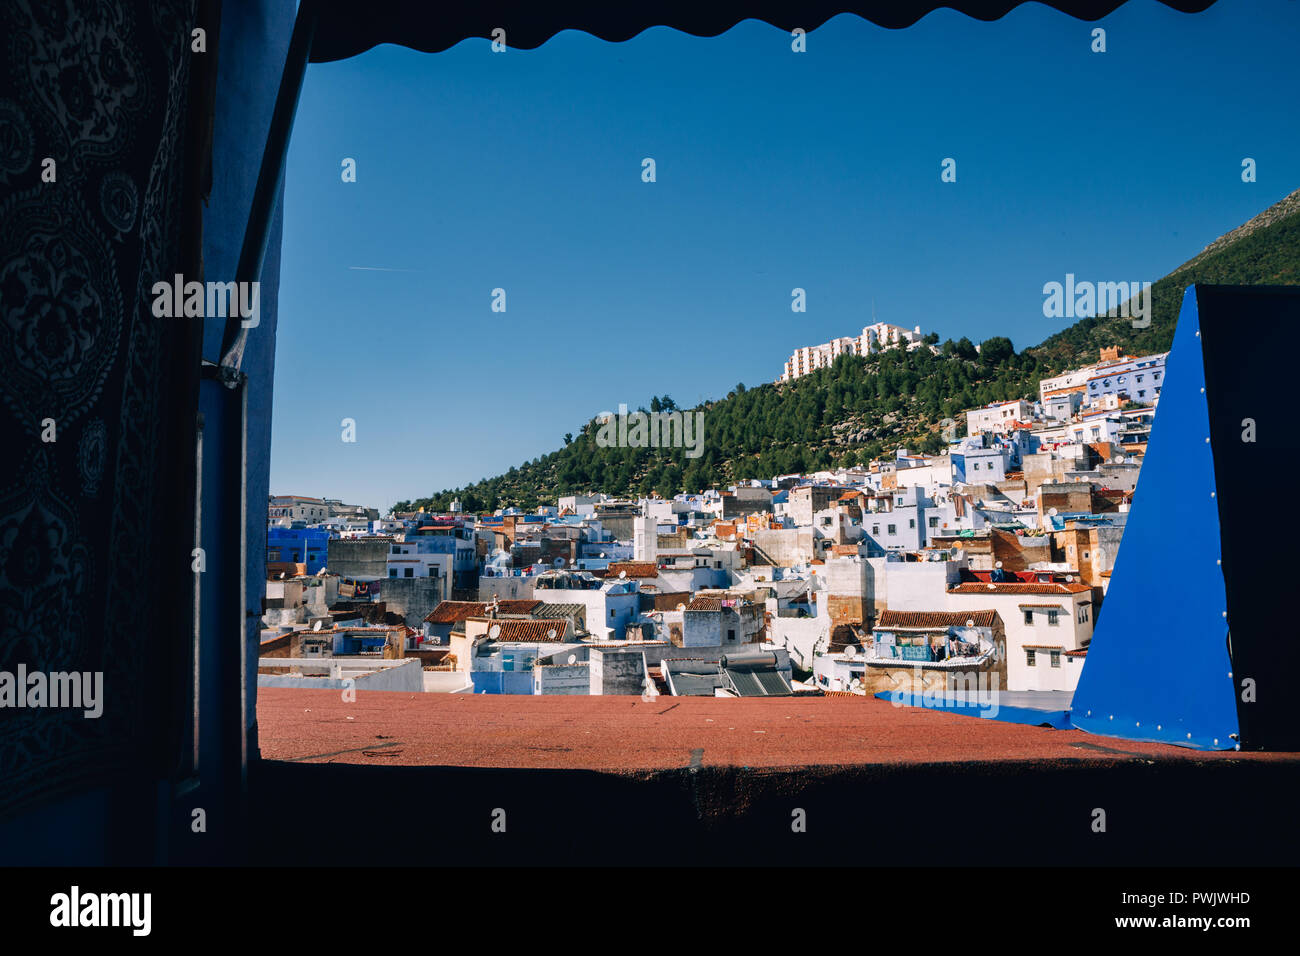 City Skyline, Chefchaouen, Maroc, 2018 Banque D'Images